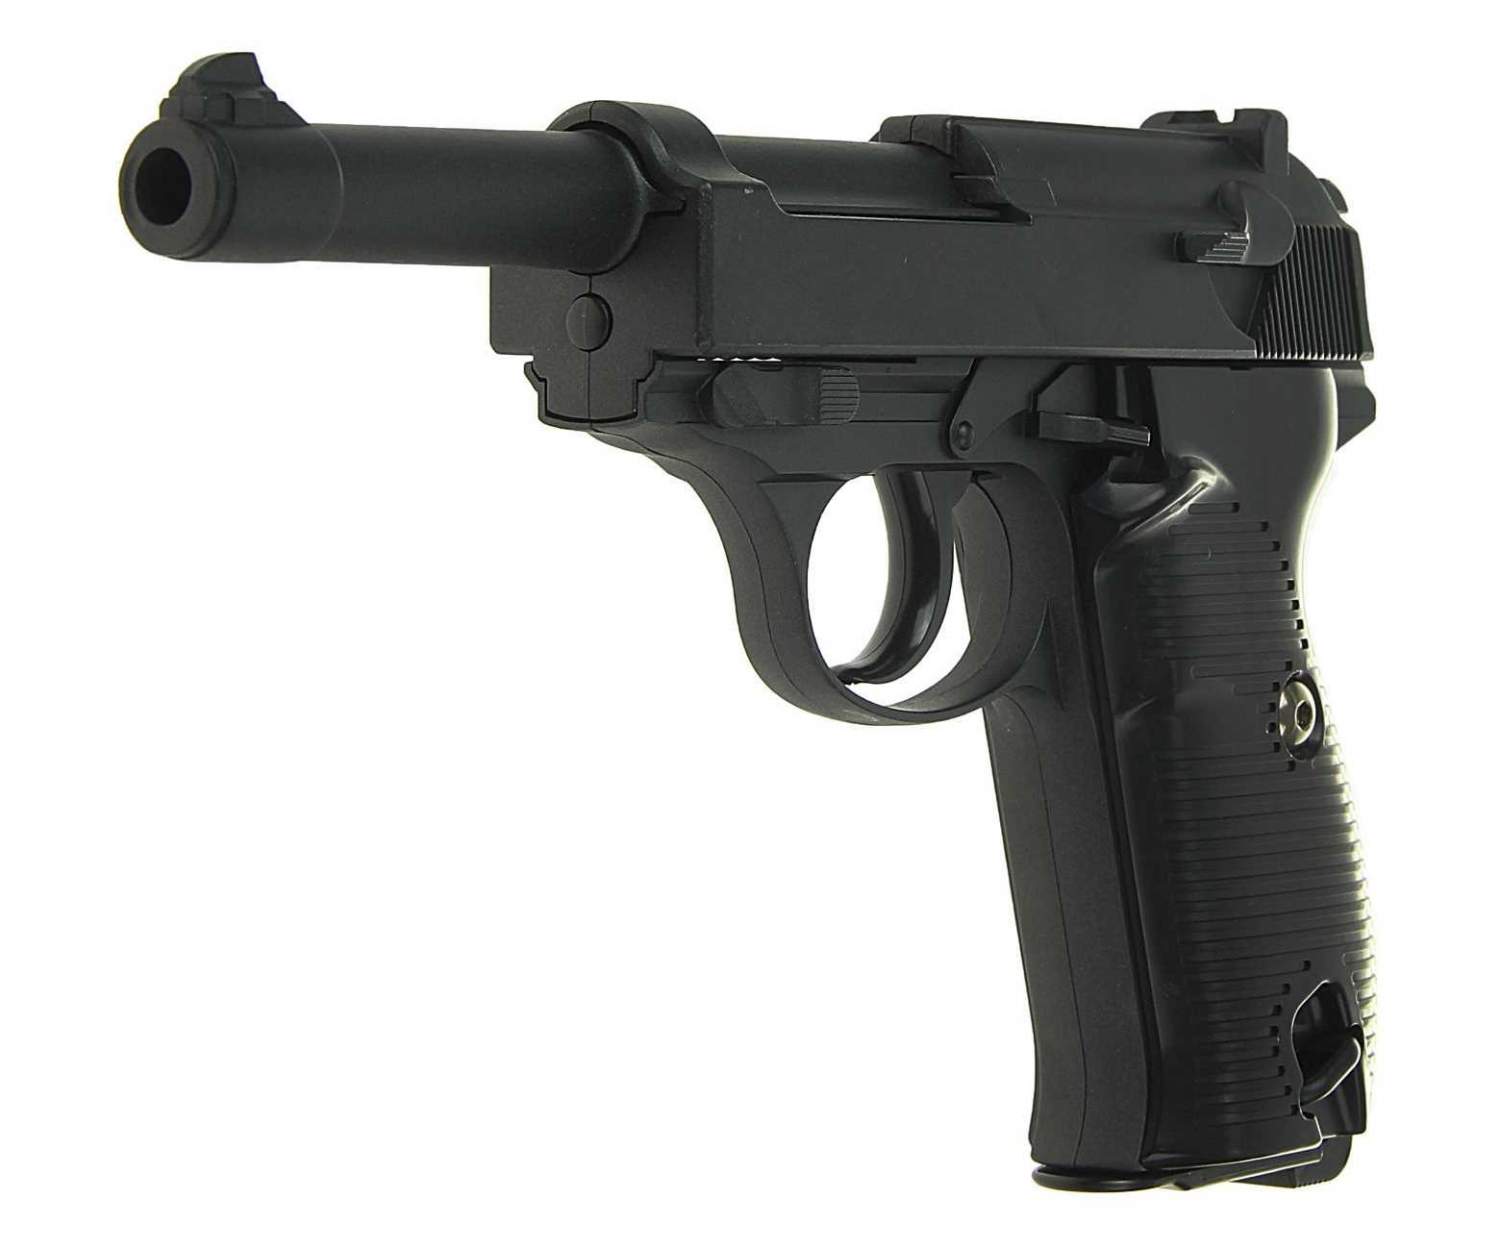 Травматический пистолет walther p22t, или просто - "резиновый вальтер"